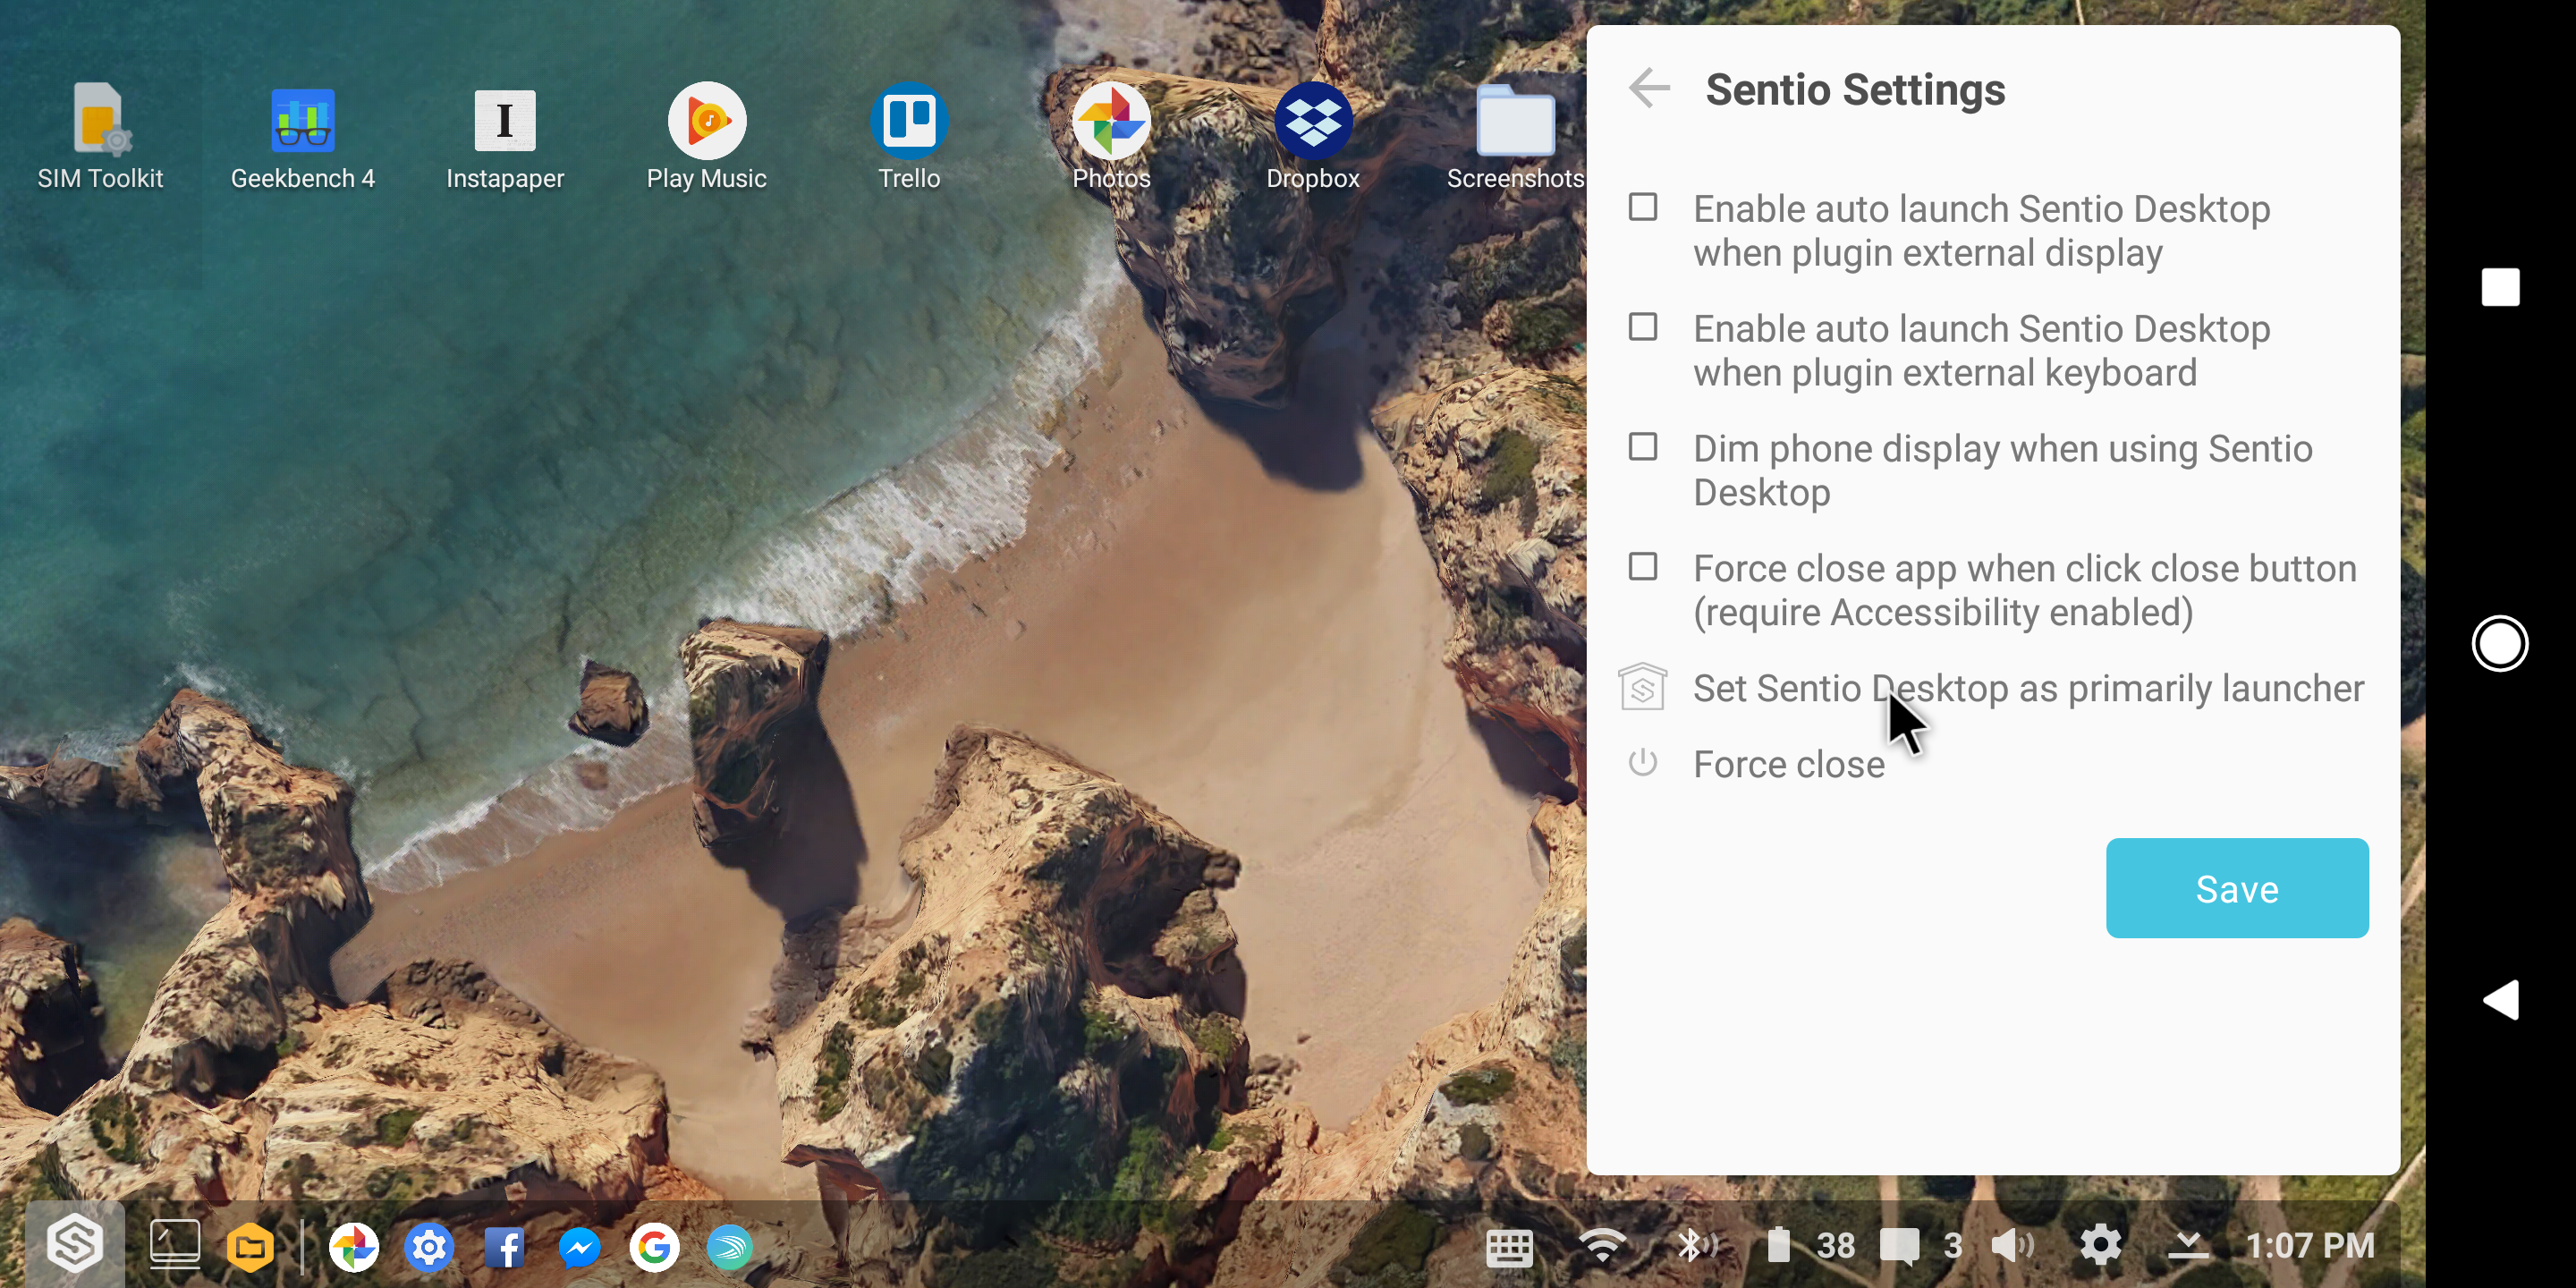 Sentio Desktop Features & Limitations (Part 1) | by Jesse Sum 